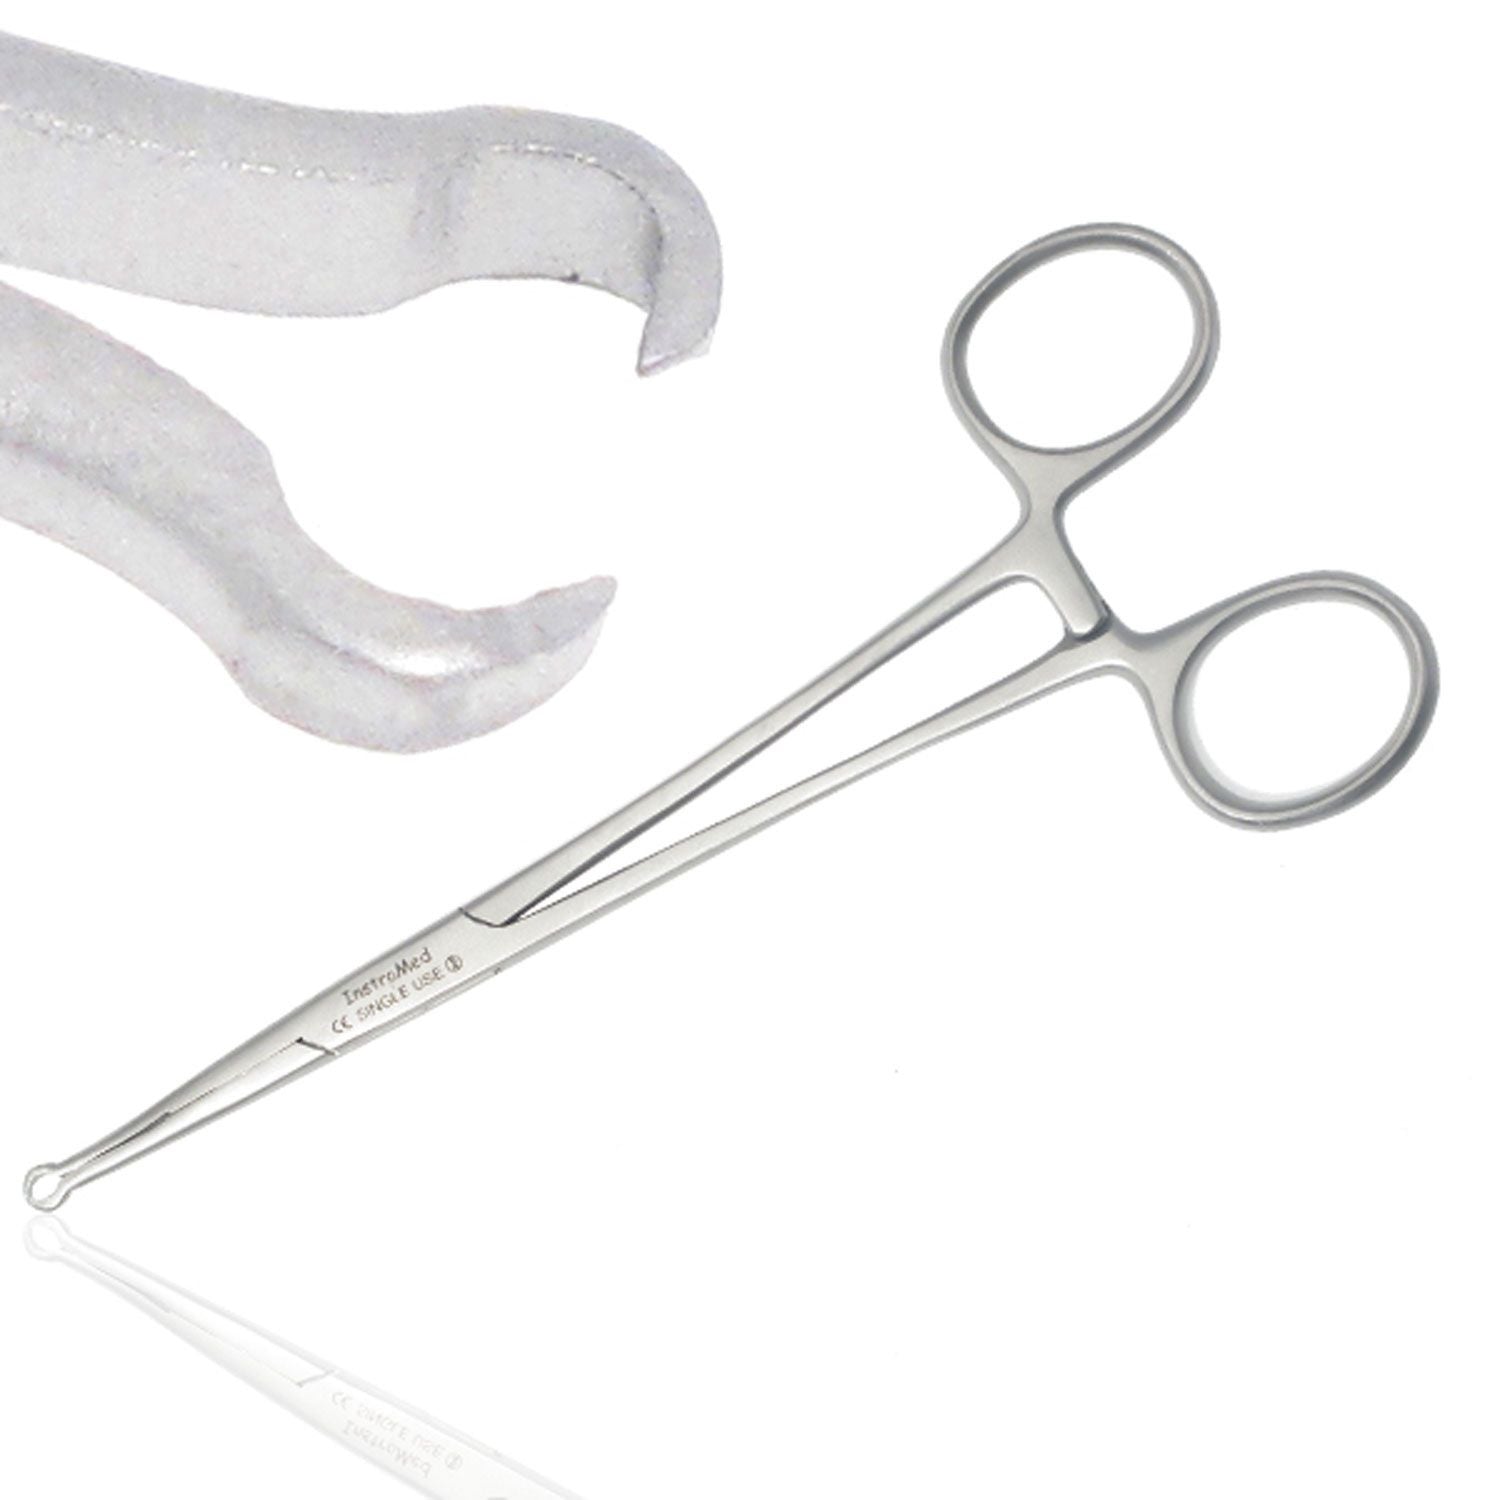 Instramed Vasectomy Forceps | Blunt/Blunt | 15.5cm | Single